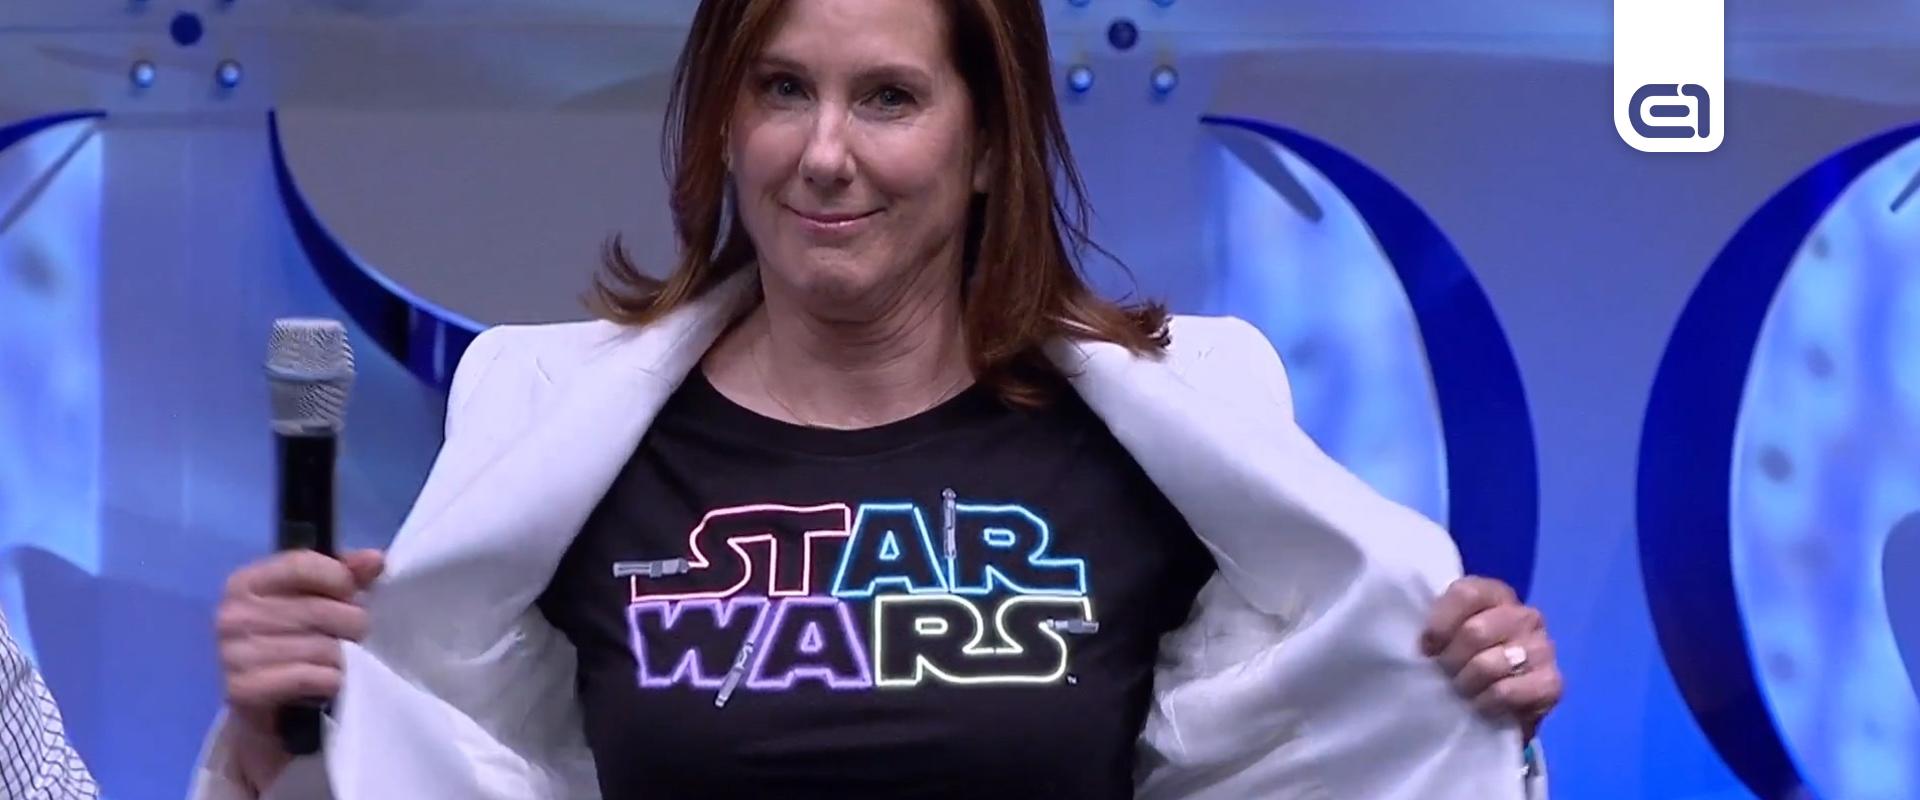 A Disney meg akar válni a Star Wars filmekért is felelős vezetőtől